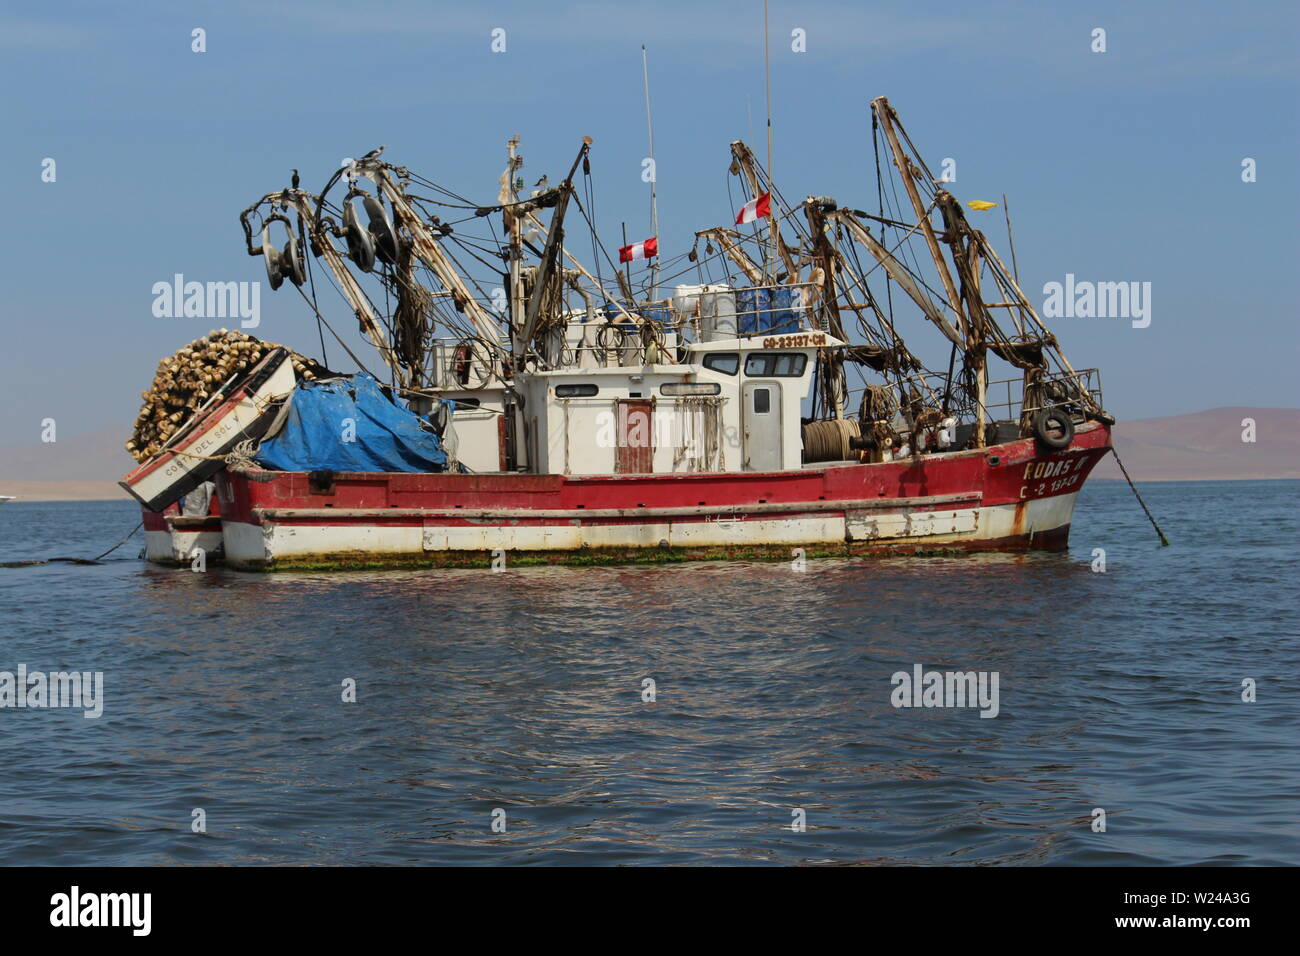 A fishing boat at Peru. Stock Photo